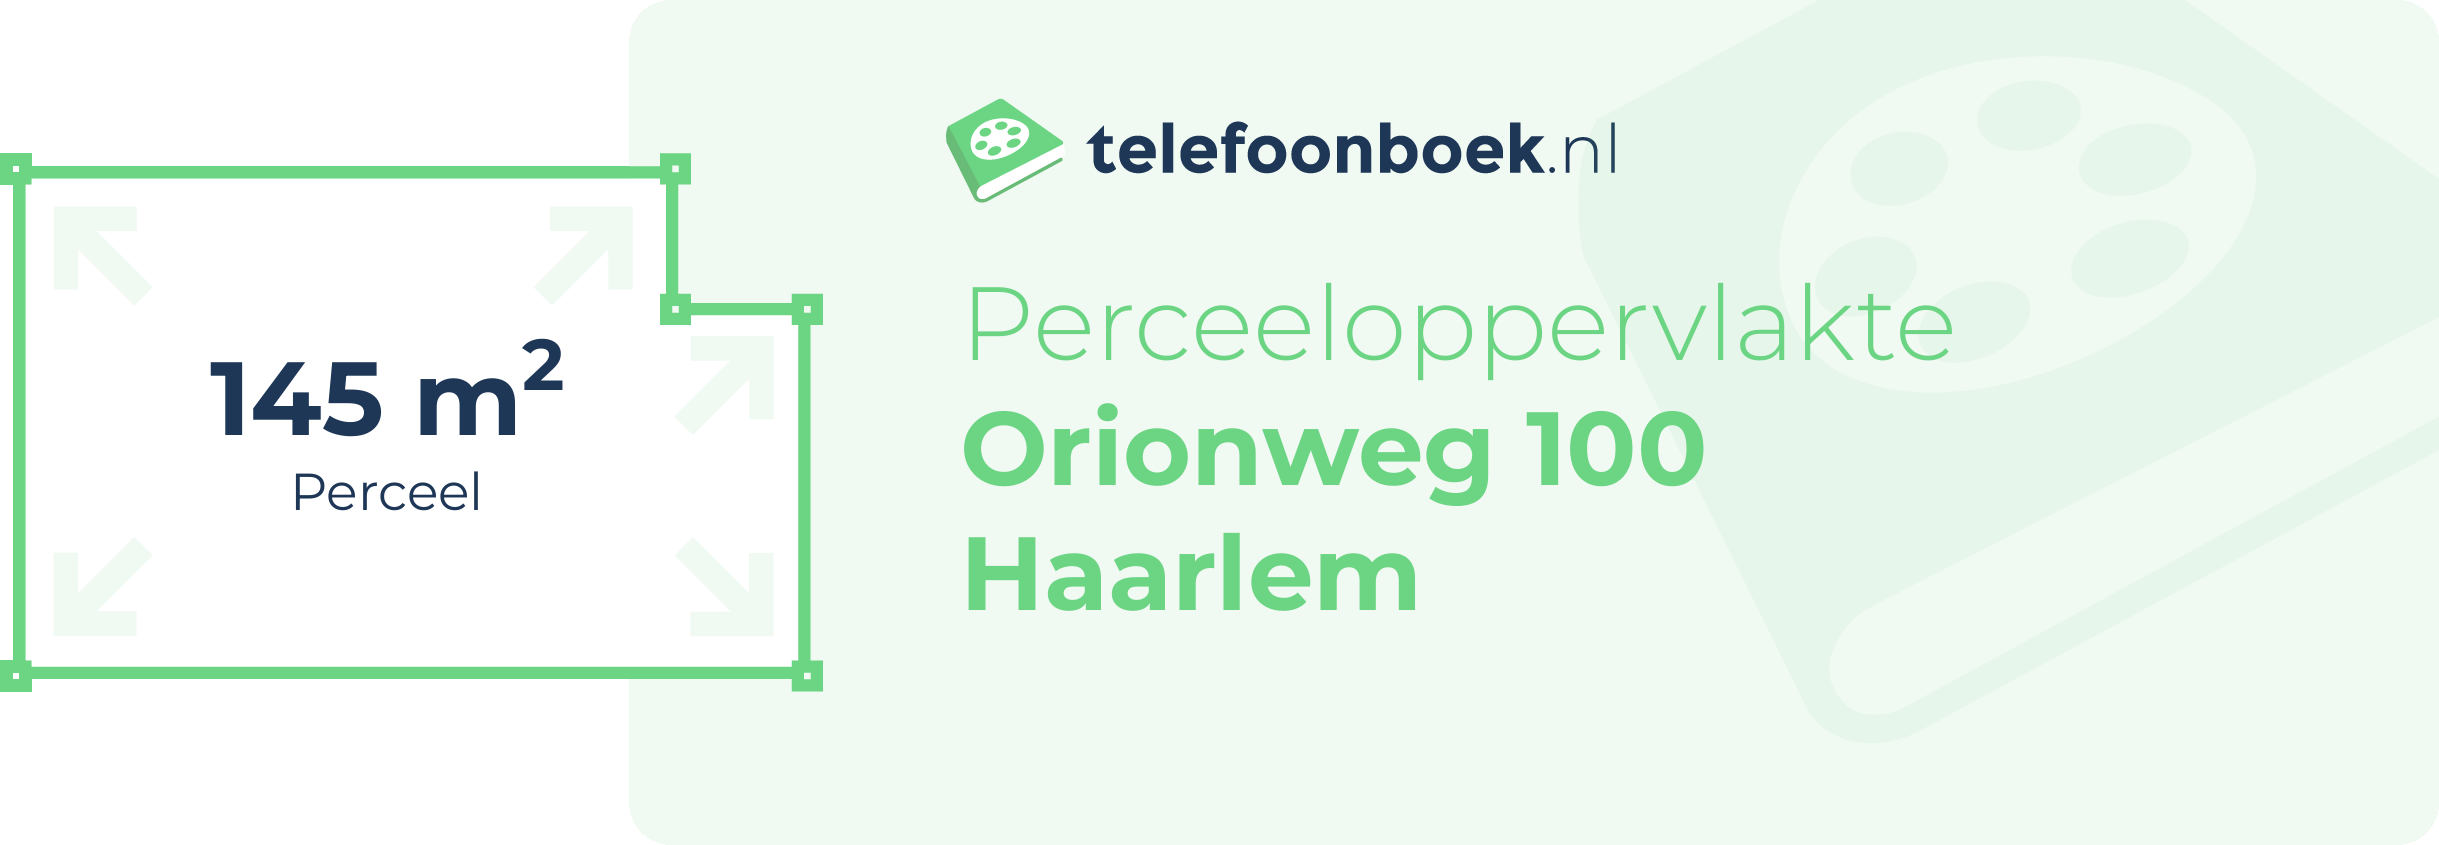 Perceeloppervlakte Orionweg 100 Haarlem